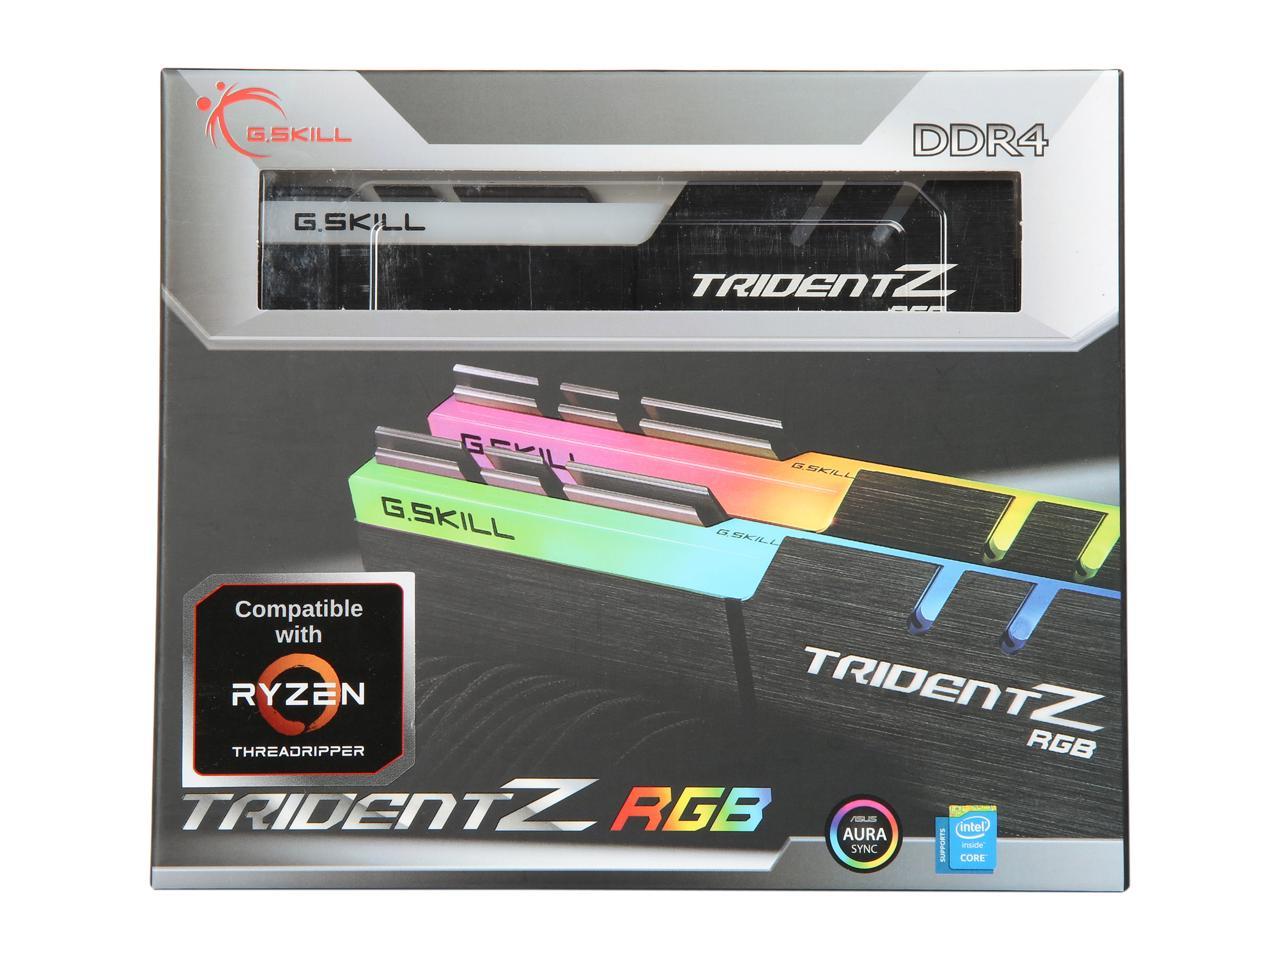 G.SKILL Trident Z RGB (For AMD) 16GB (2 x 8GB) 288-Pin DDR4 SDRAM DDR4 2400 (PC4 19200) AMD X370 / X399 Desktop Memory Model F4-2400C15D-16GTZRX